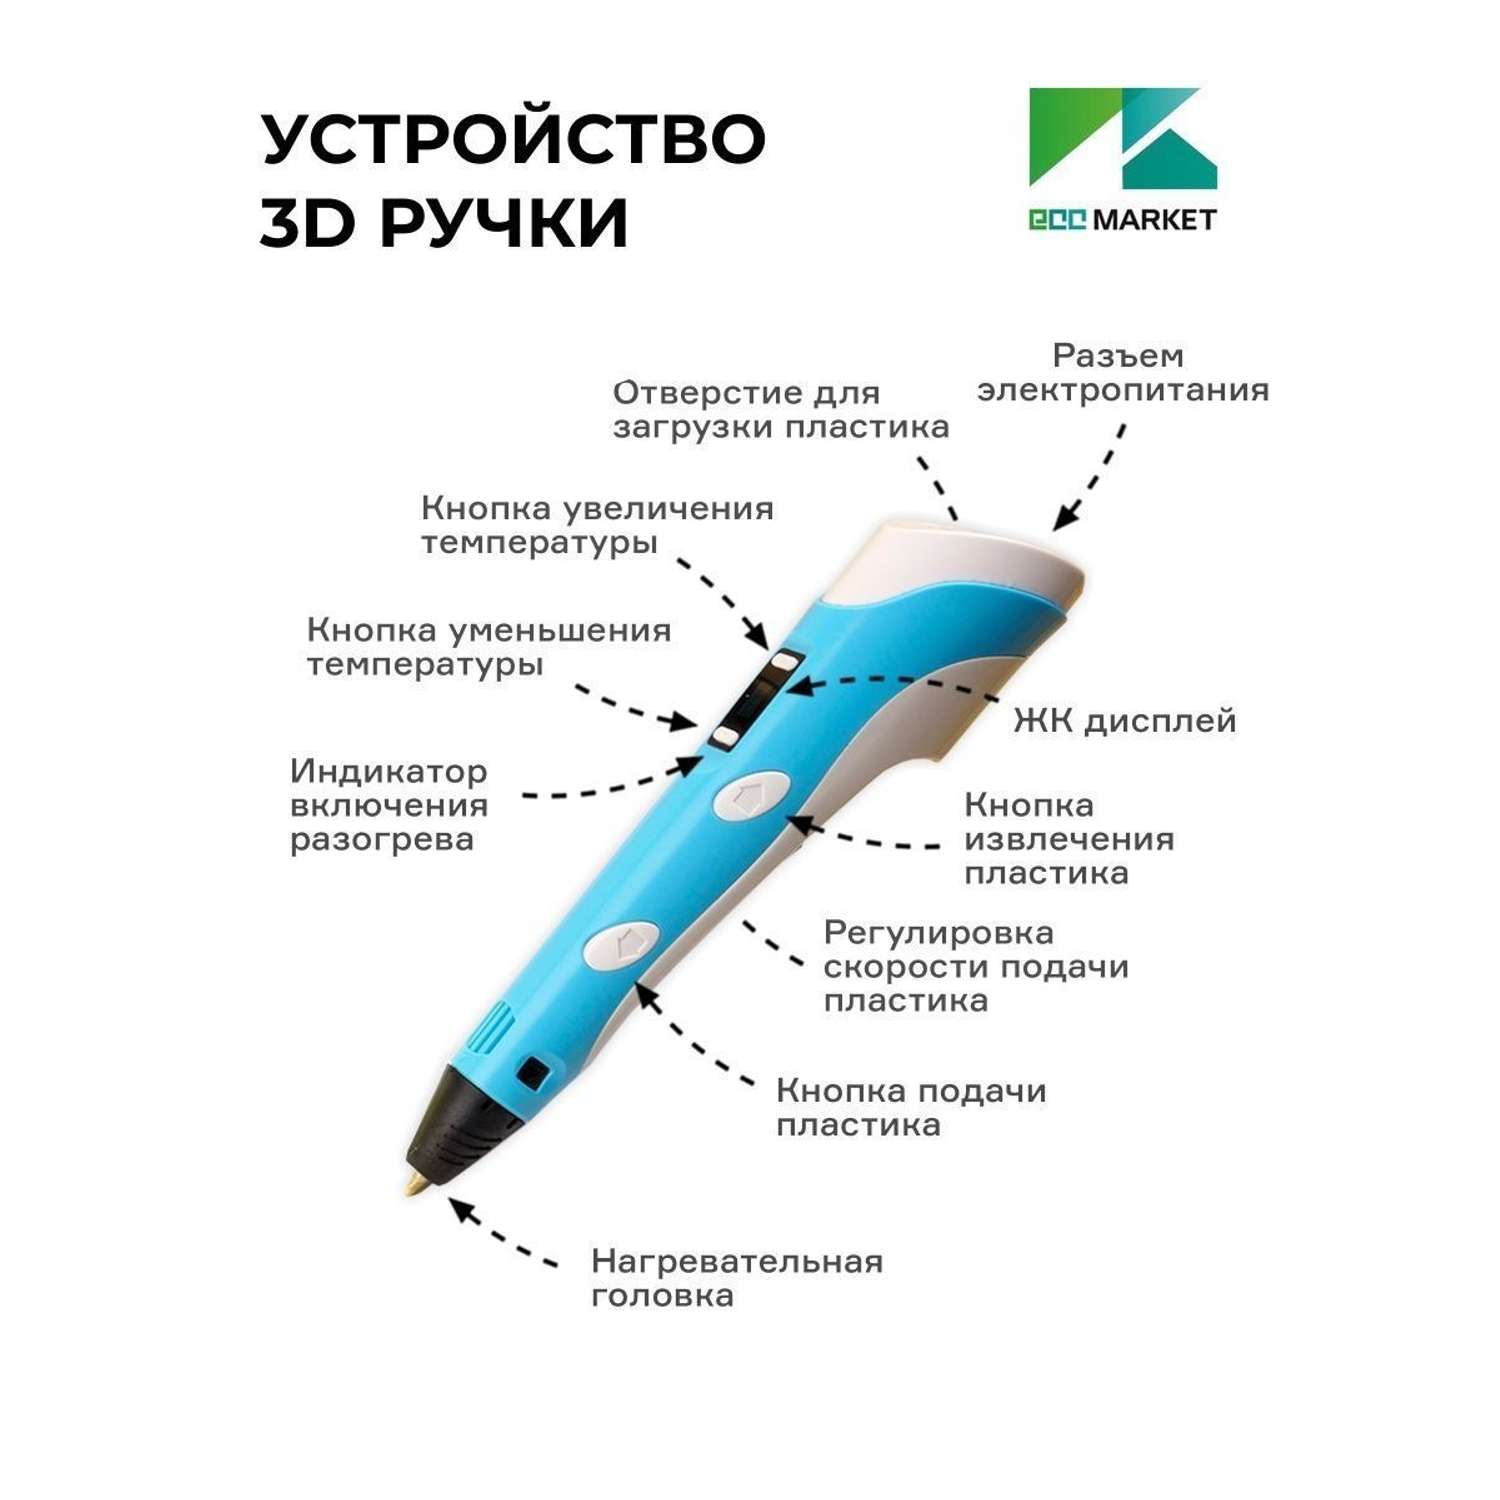 3D ручка ECC Market 3DPEN 3 7 голубая - фото 5